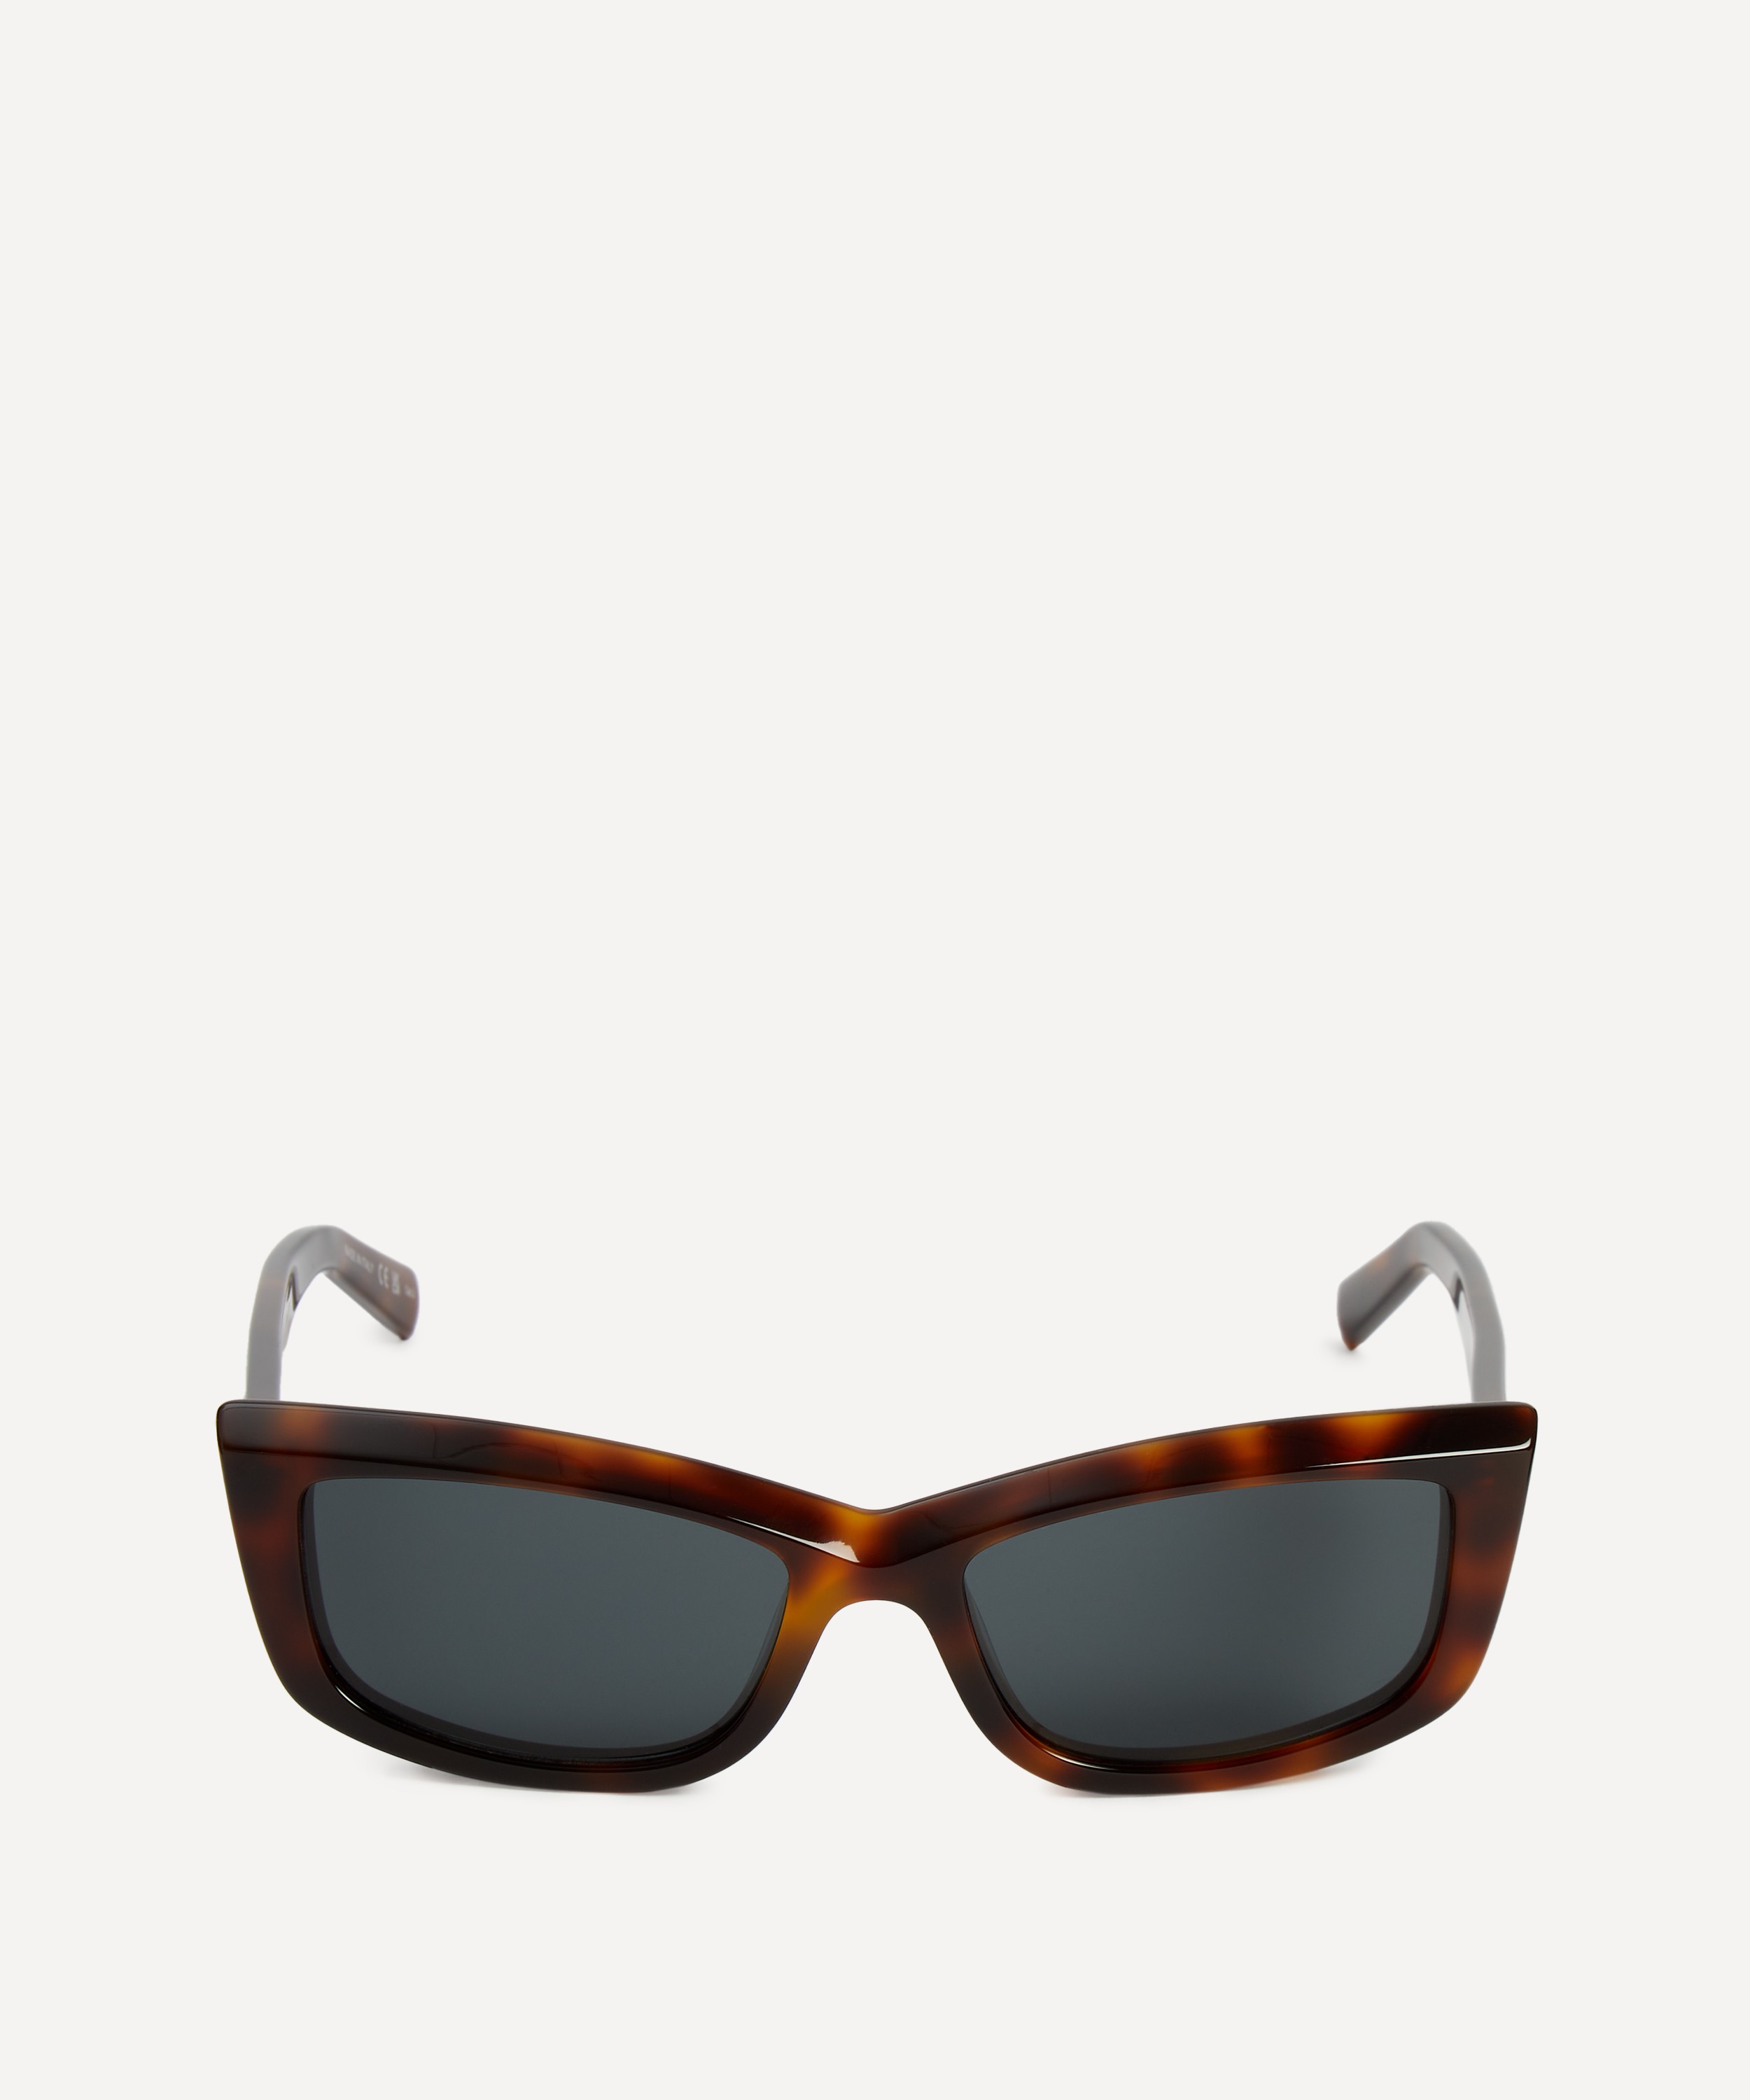 Saint Laurent - Rectangular Sunglasses